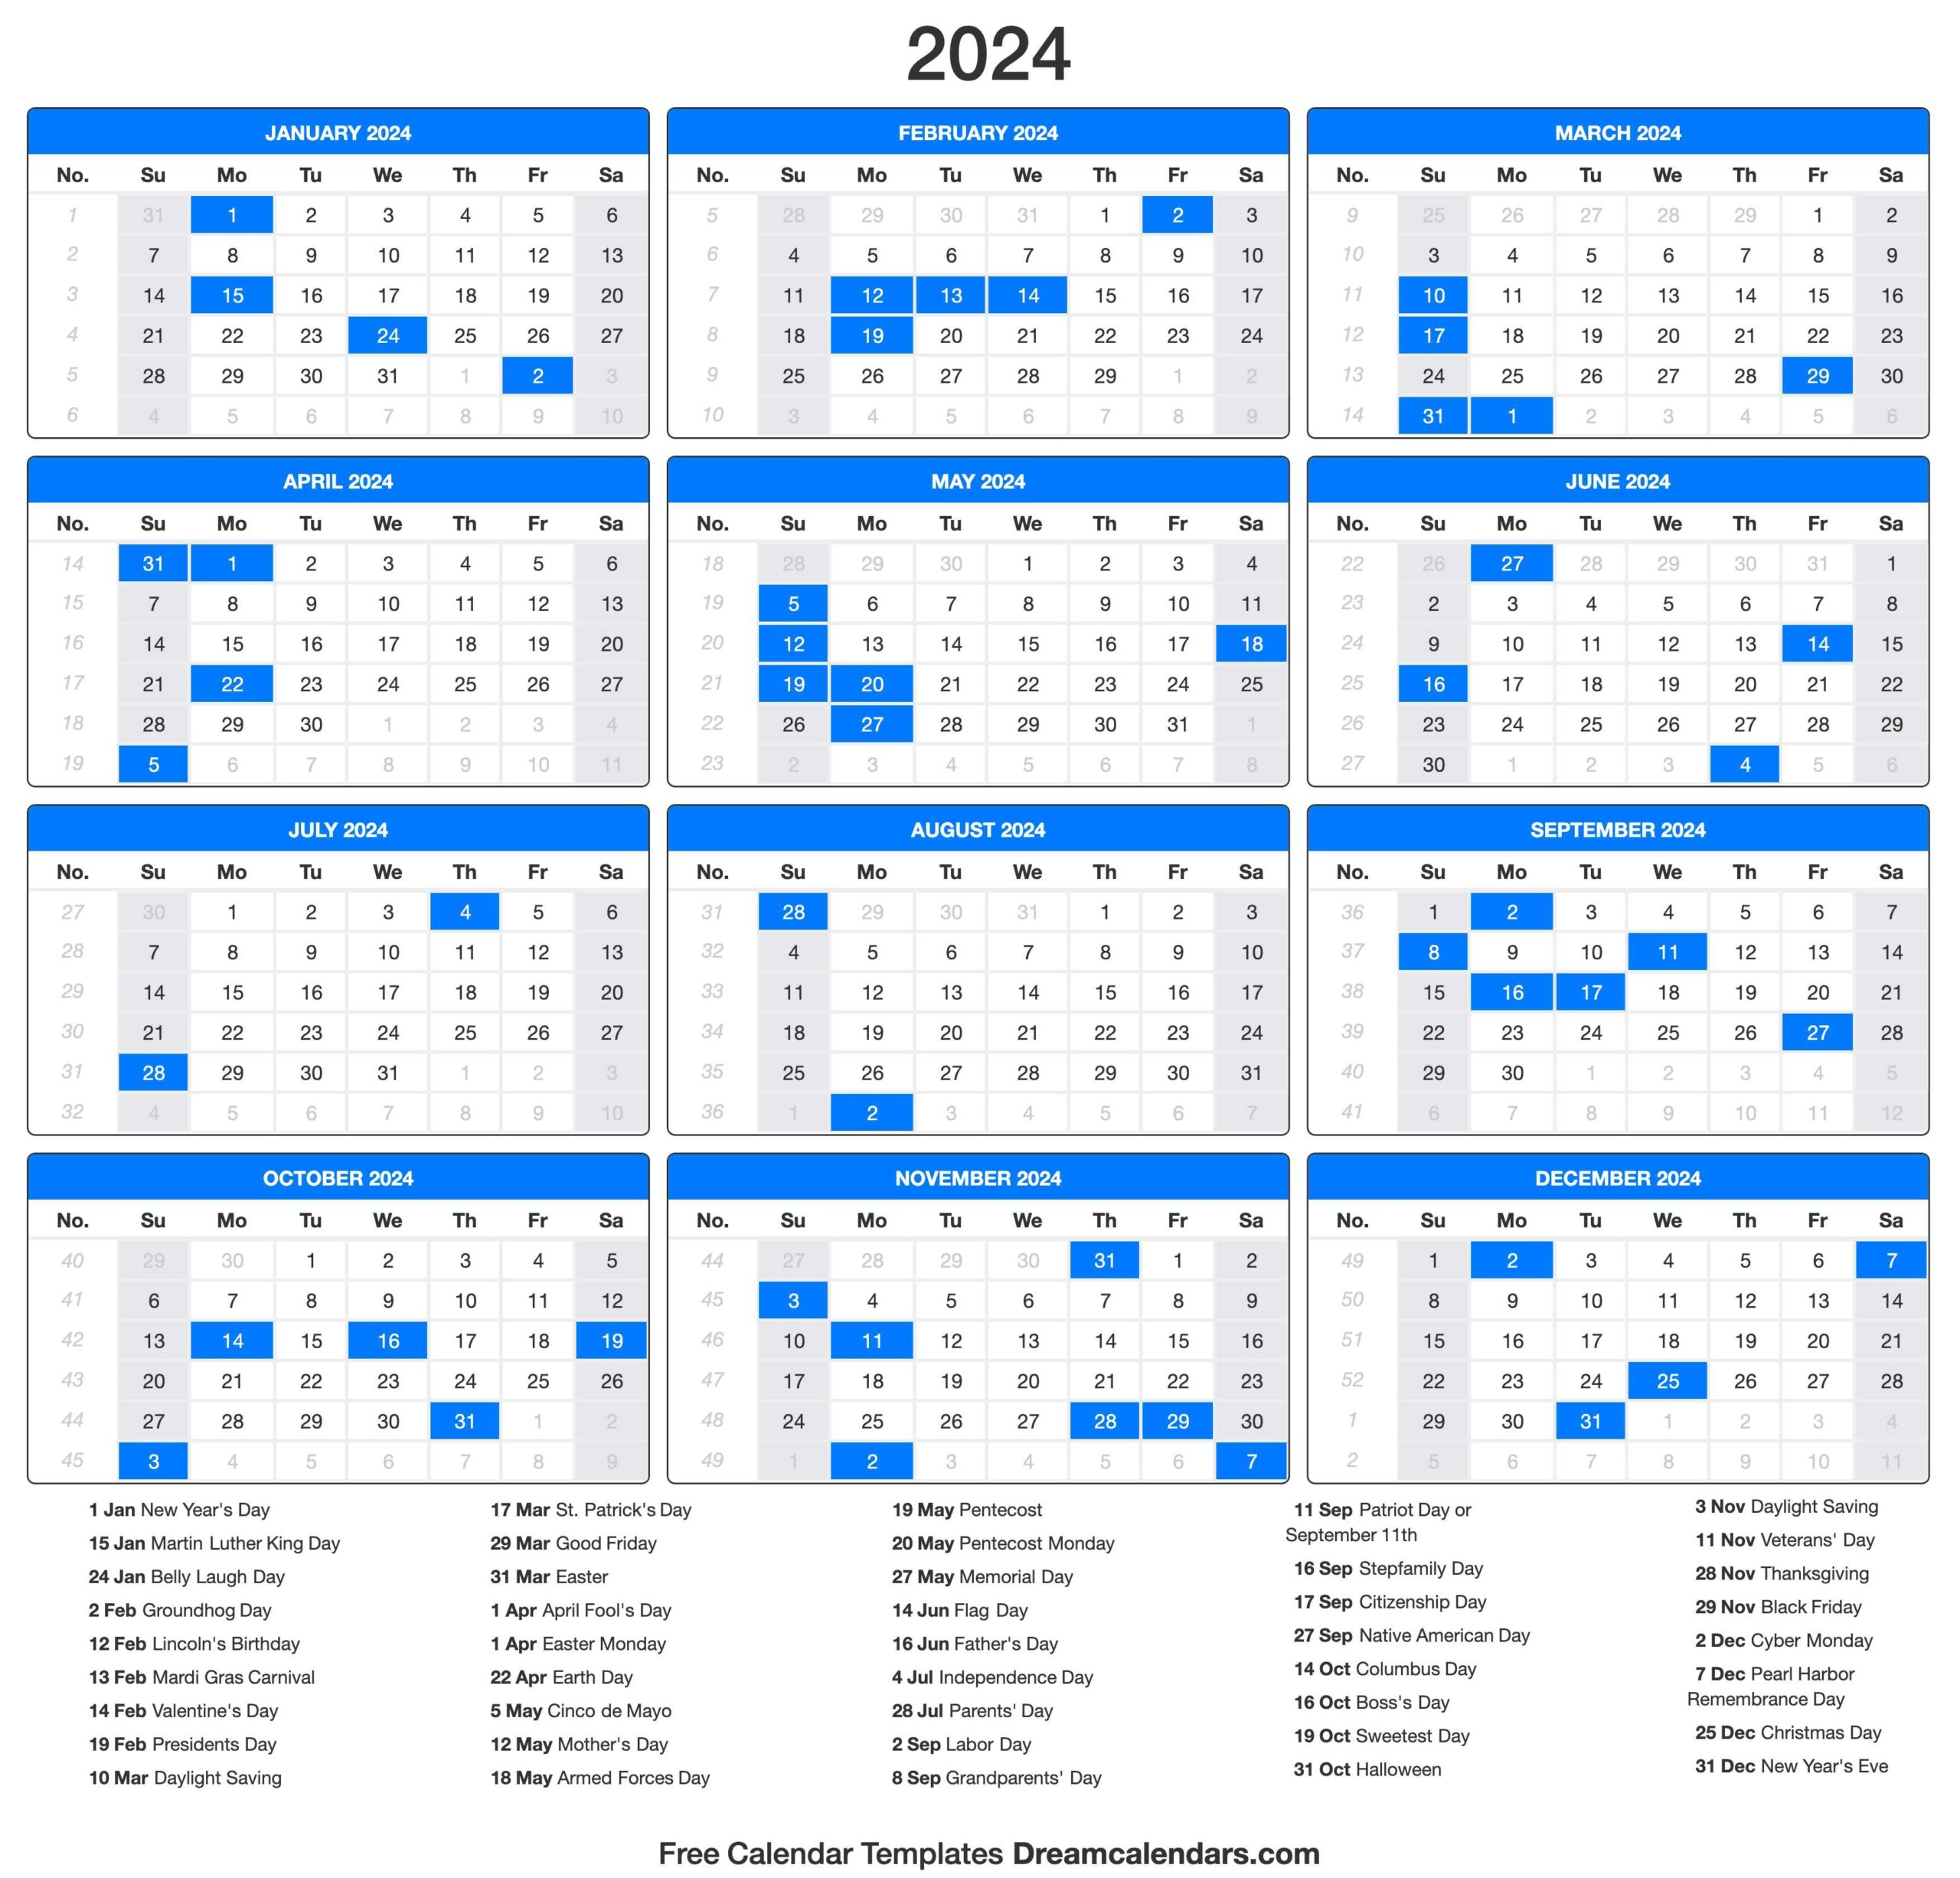 2024 Calendar - Free Printable 2024 Calendar With Religious Holidays